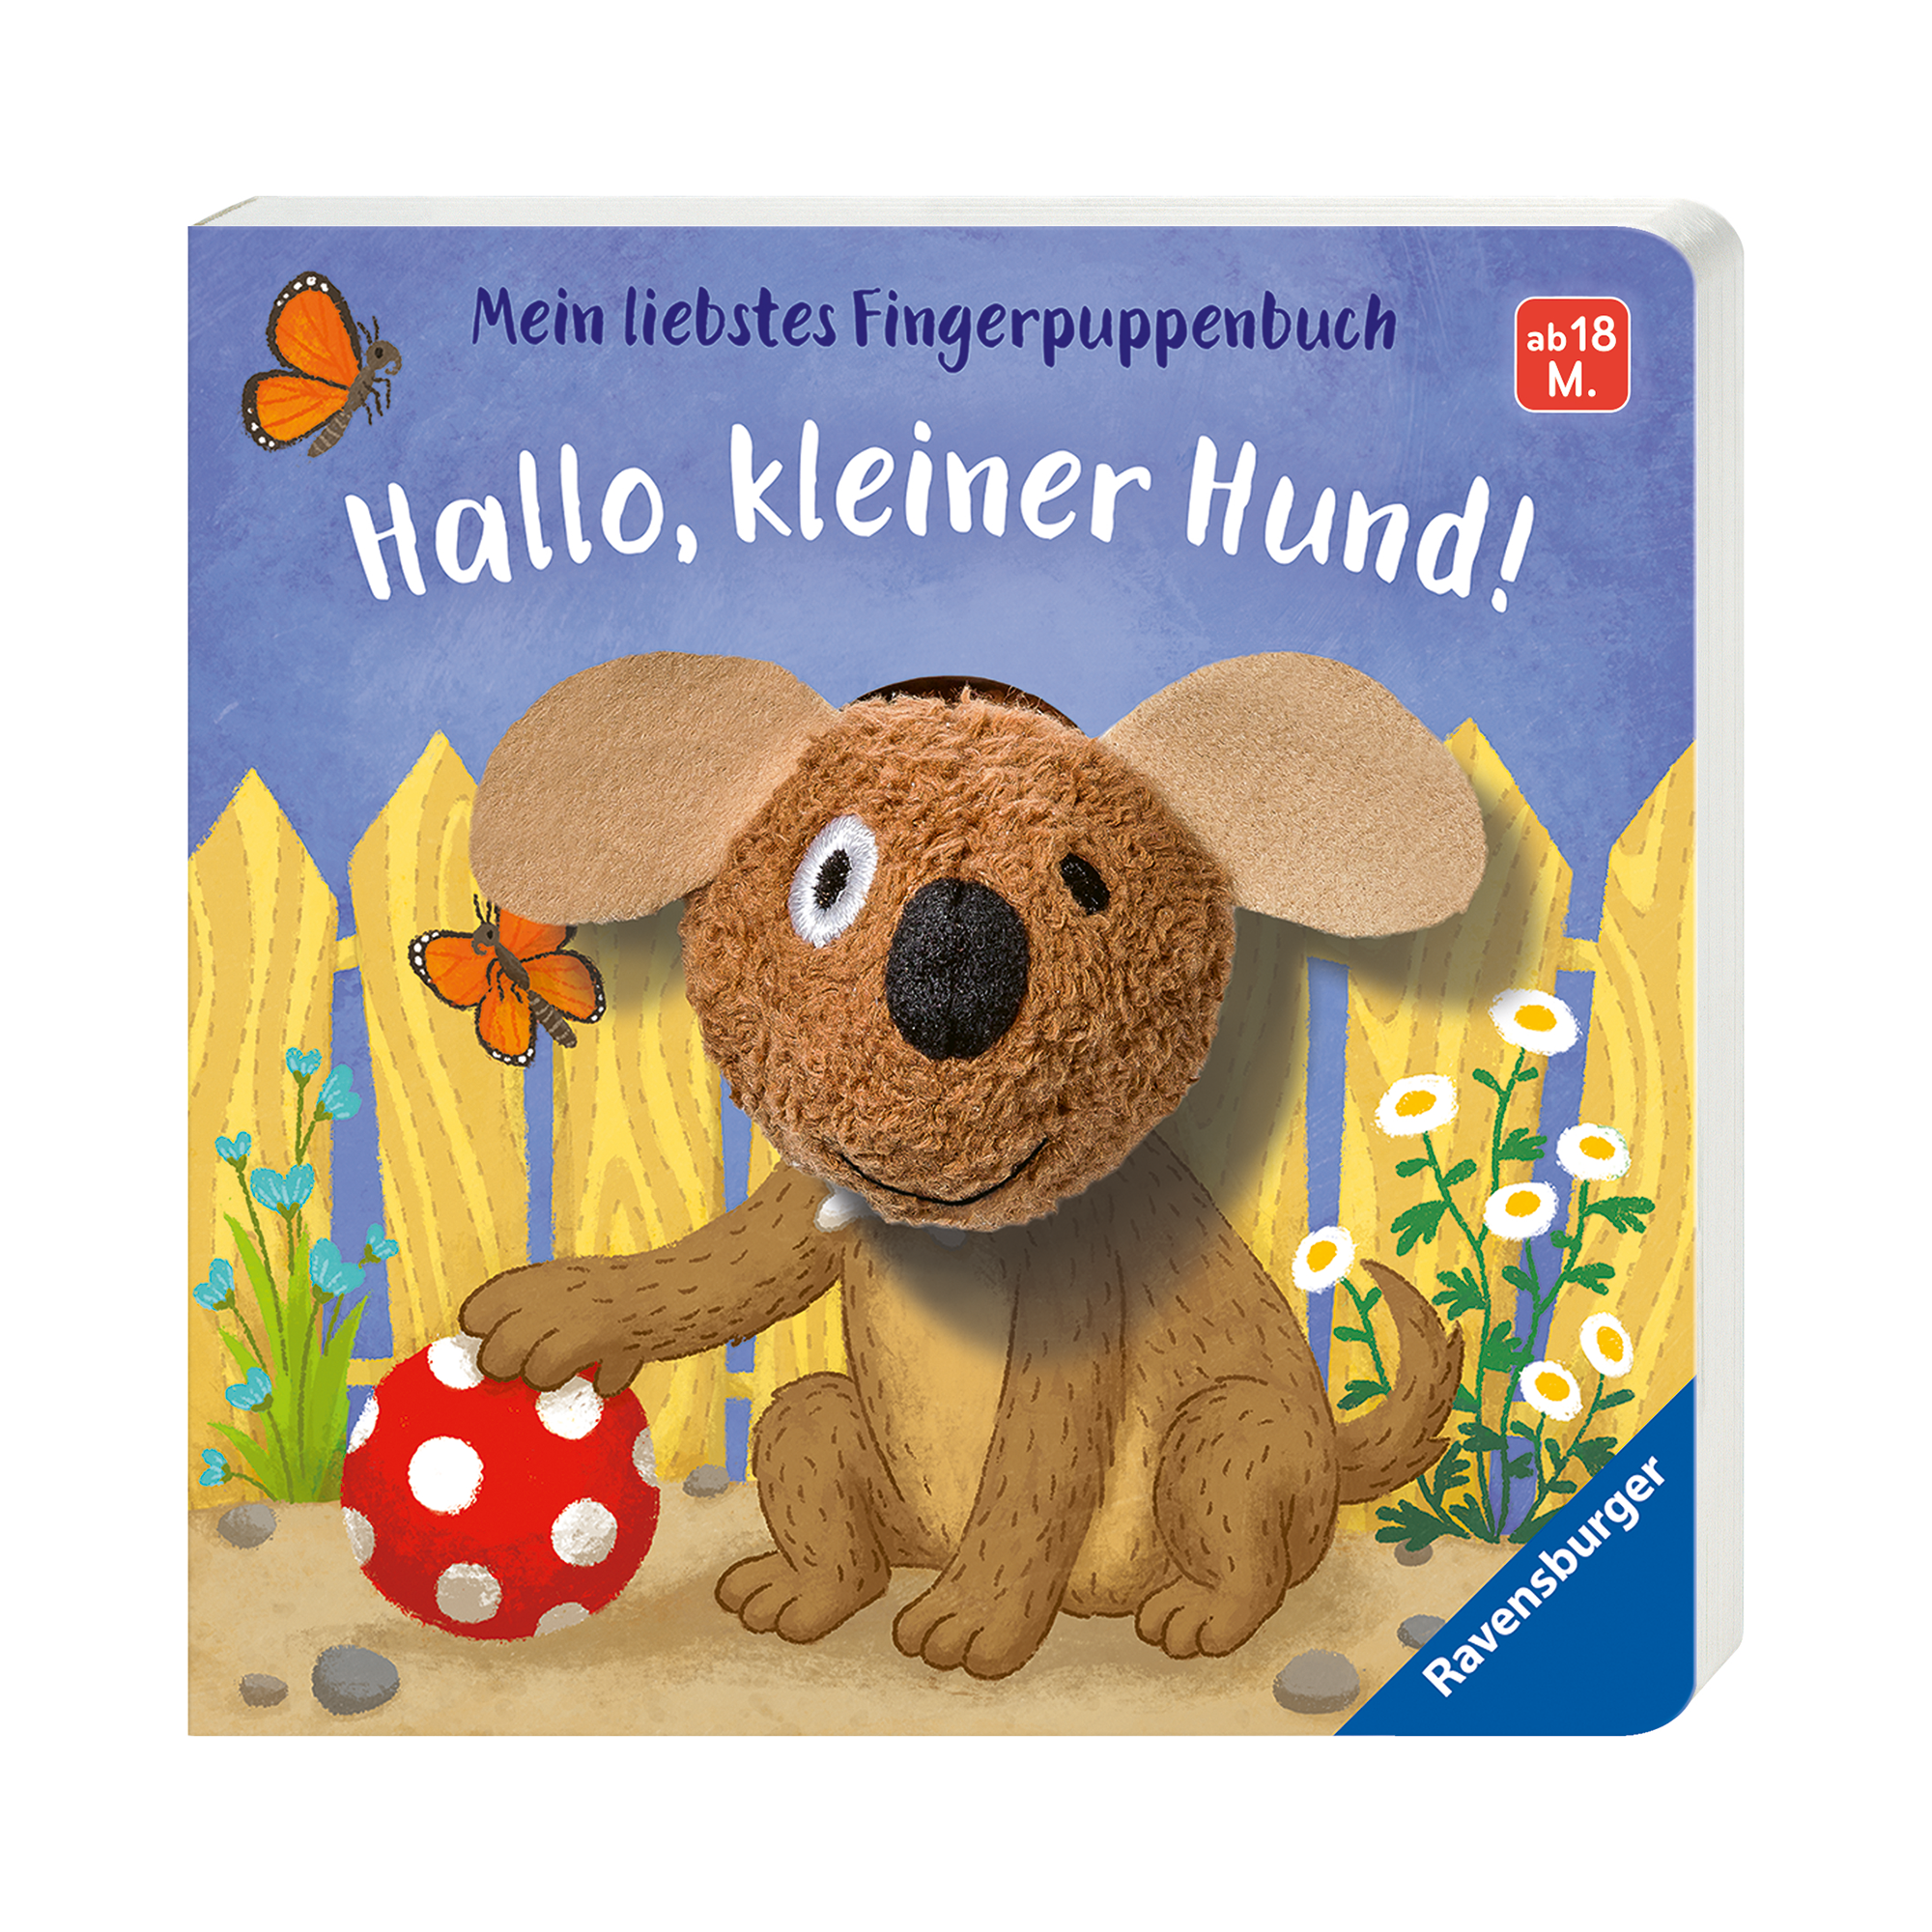 Mein liebstes Fingerpuppenbuch: Hallo kleiner Hund! Ravensburger Mehrfarbig 2000577844005 1